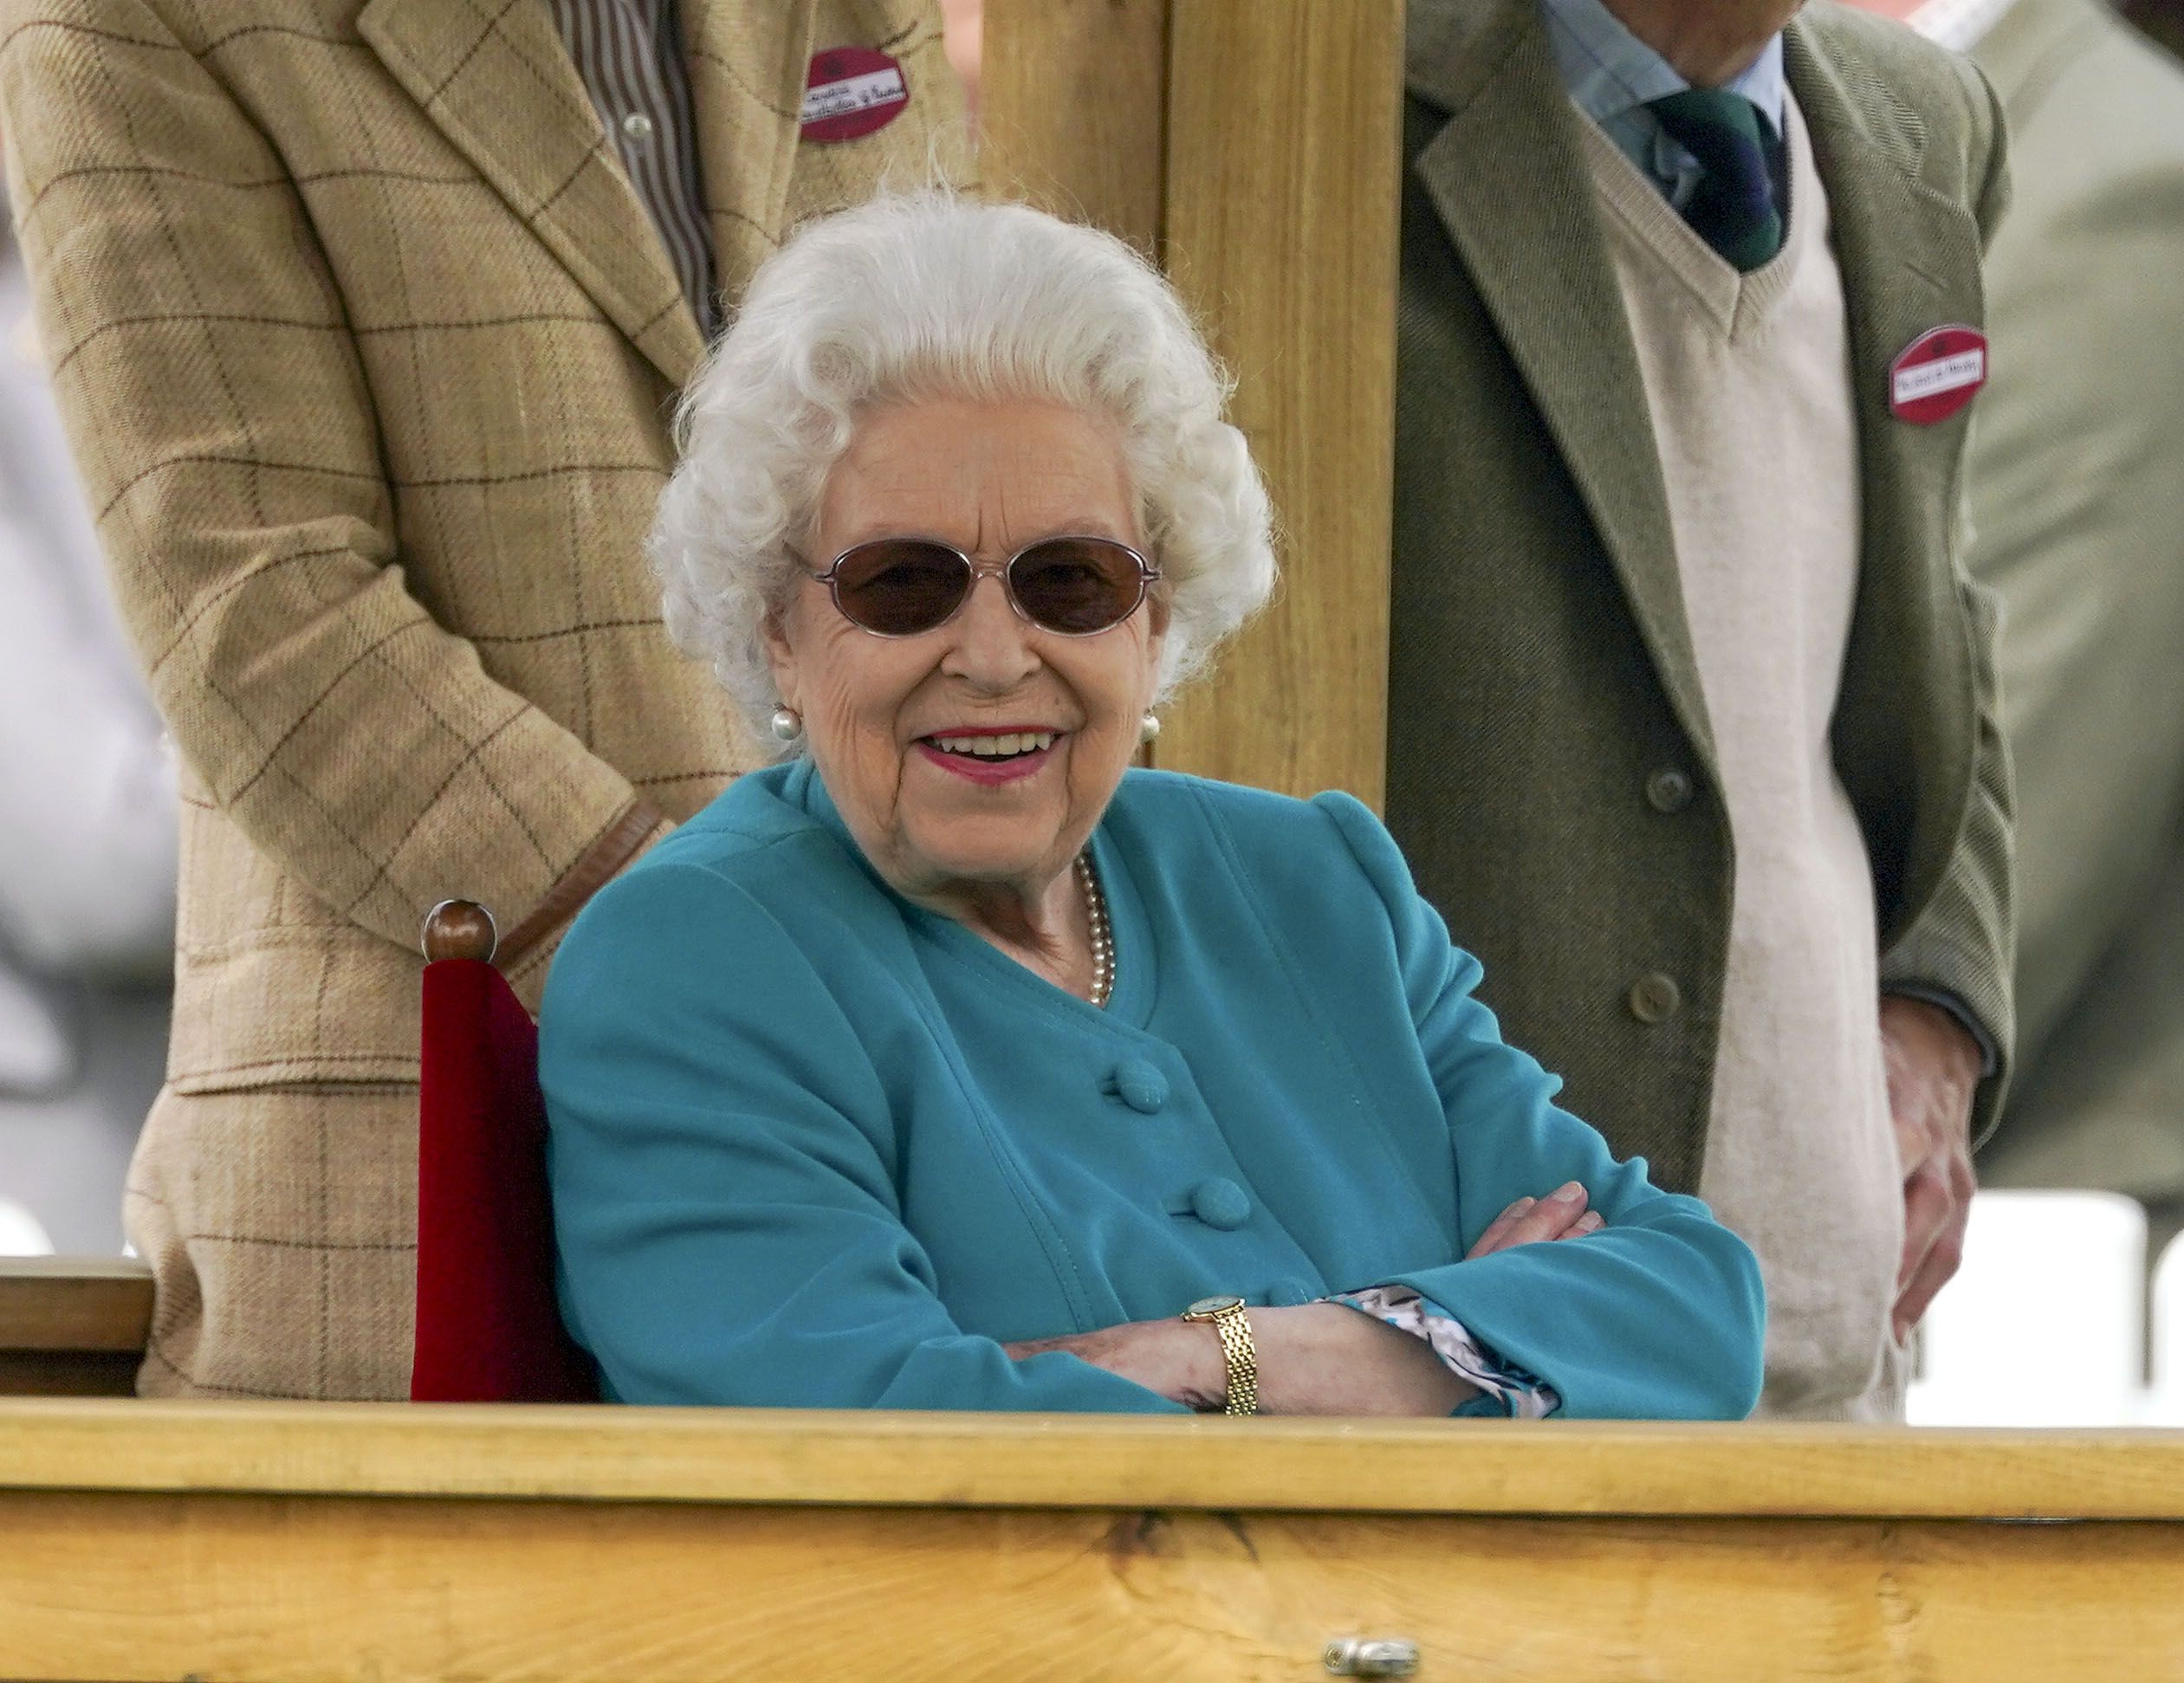 The Queen Enjoys 21 Royal Windsor Horse Show